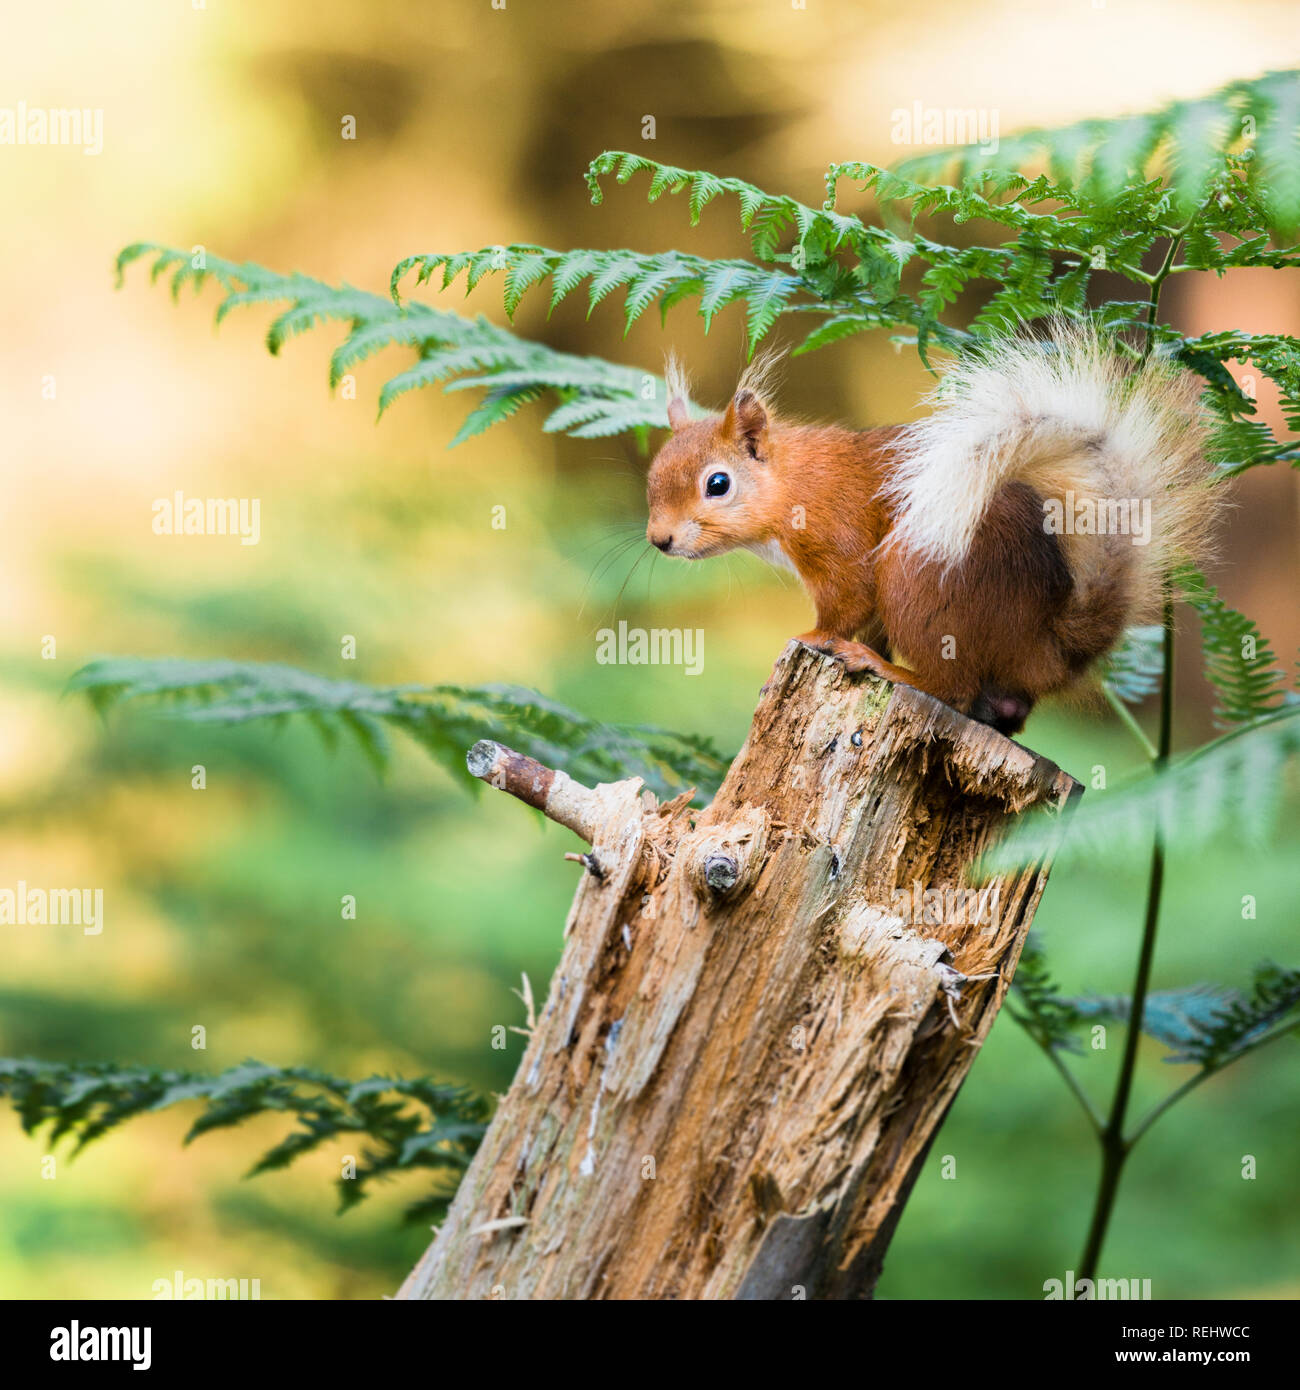 Ein rotes Eichhörnchen auf der Oberseite eines alten Baumstumpf rückwärts, Suchen mit dem Schwanz um seinen Körper gewellt thront, mit Farnen bedeckt. Stockfoto